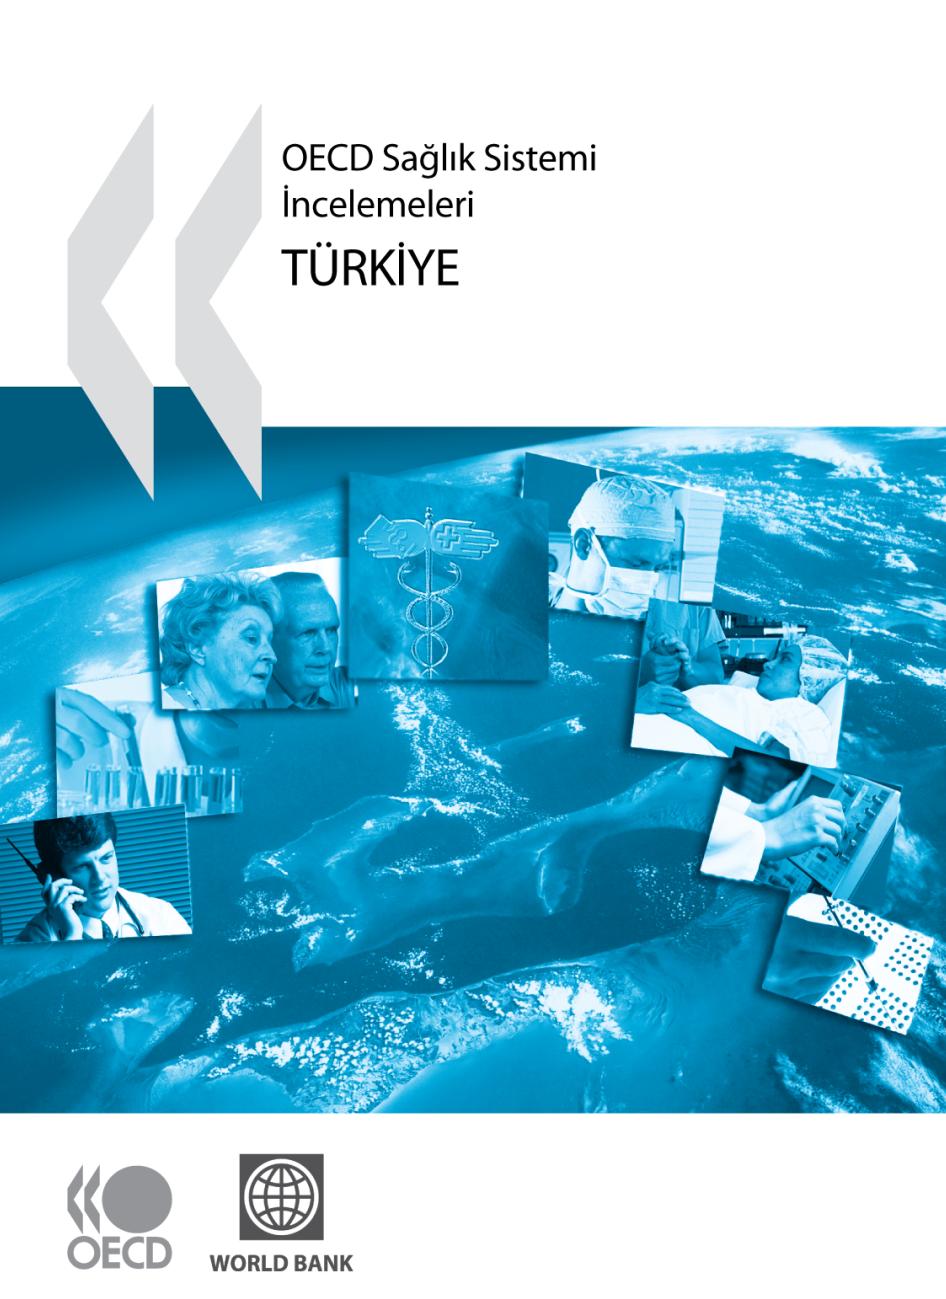 OECD Türkiye Sağlık Sistemi Ġncelemesi Rapor, 124. Sayfa; Sağlık sistemi reformu, daimi bir süreçtir.